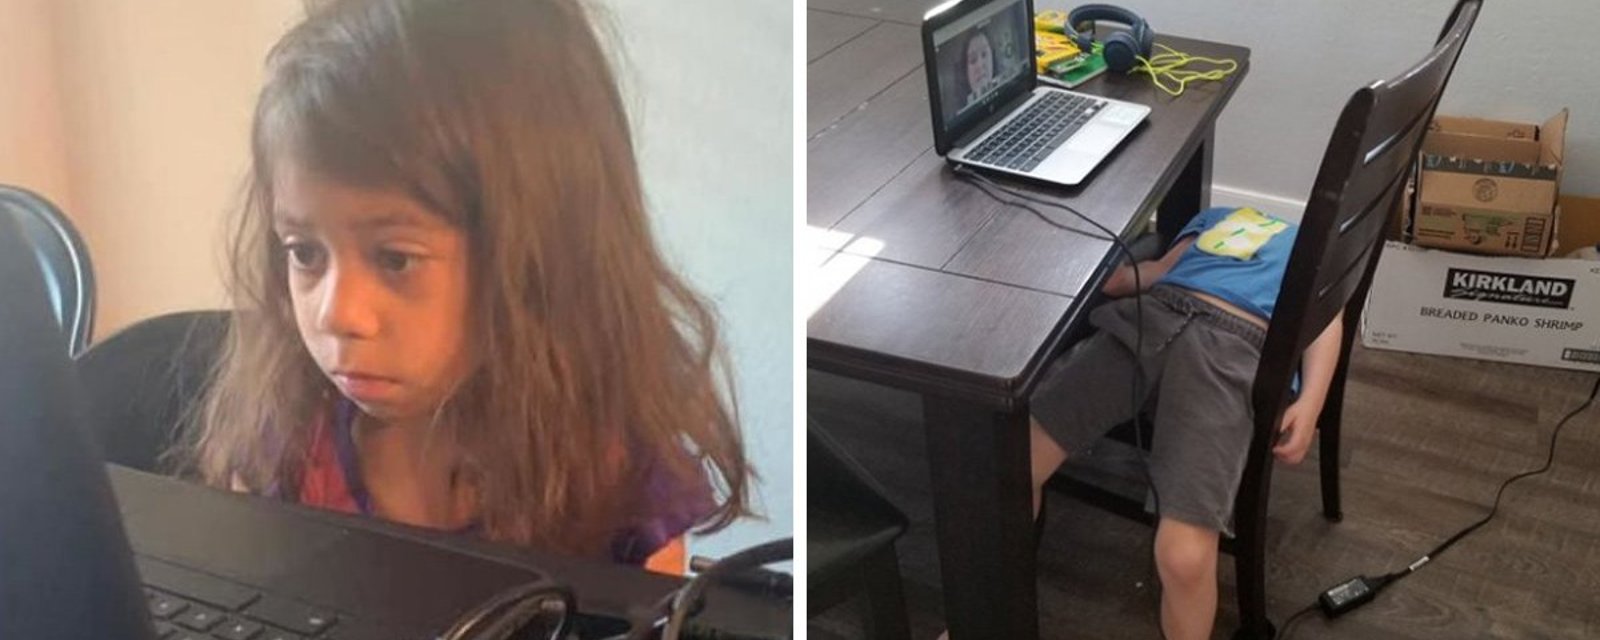 11 photos qui montrent à quoi peut ressembler la réalité d'un jeune écolier en classe virtuelle